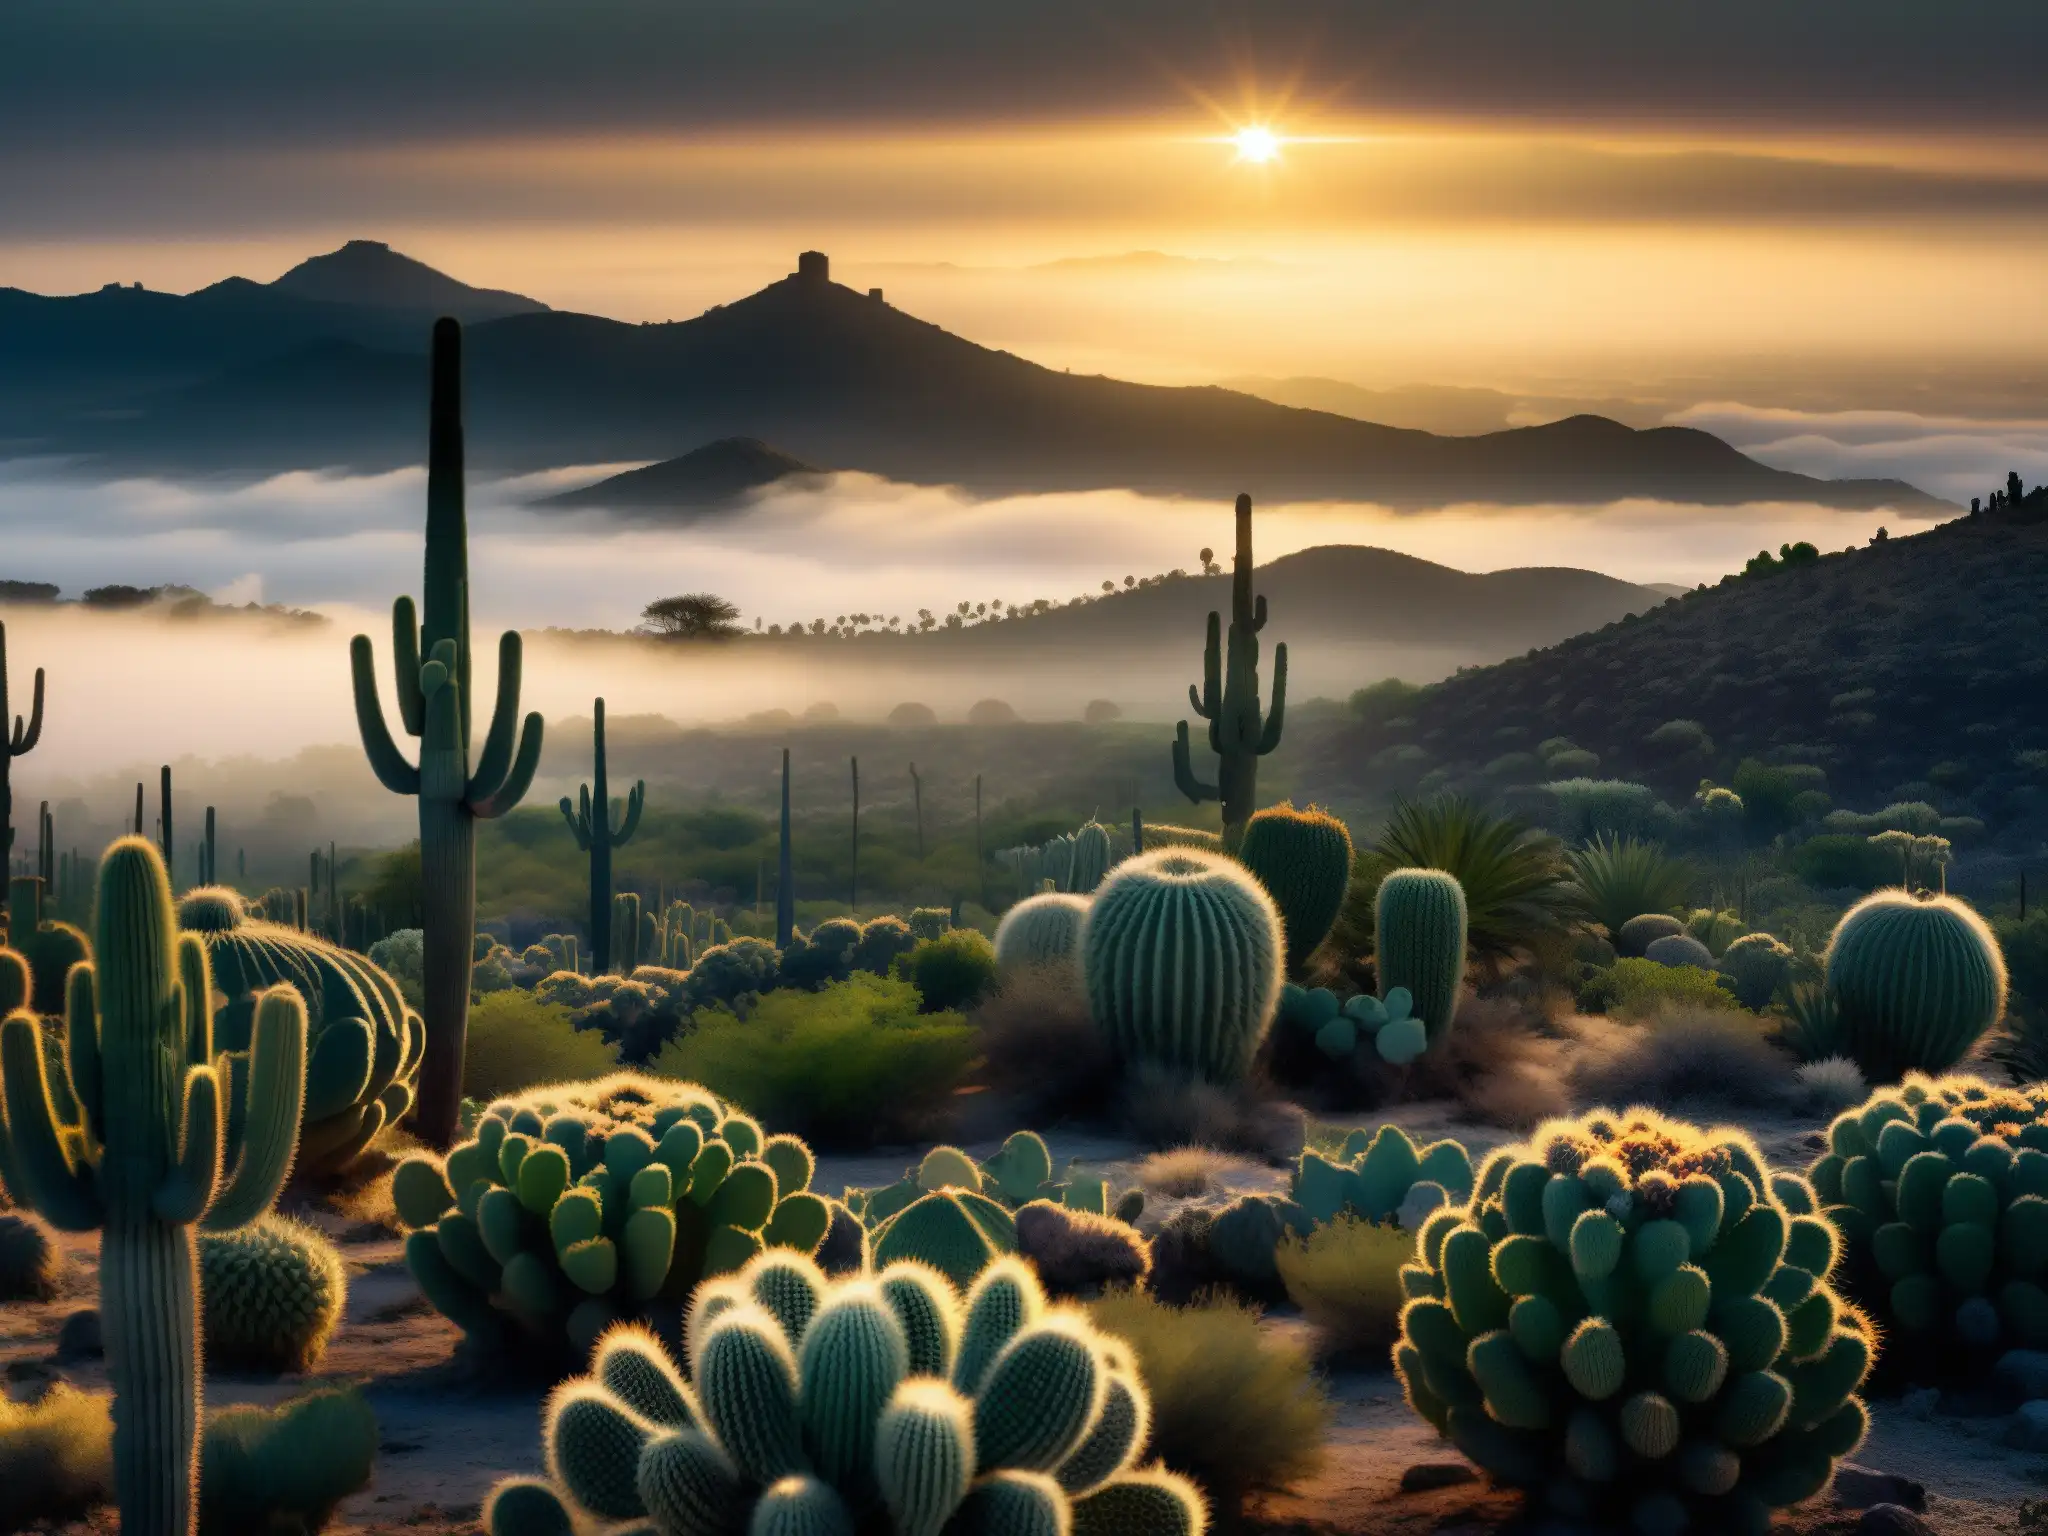 Misterioso paisaje de la Zona del Silencio en México, con cactus y desierto envueltos en niebla, evocando un aura de misterio y desolación